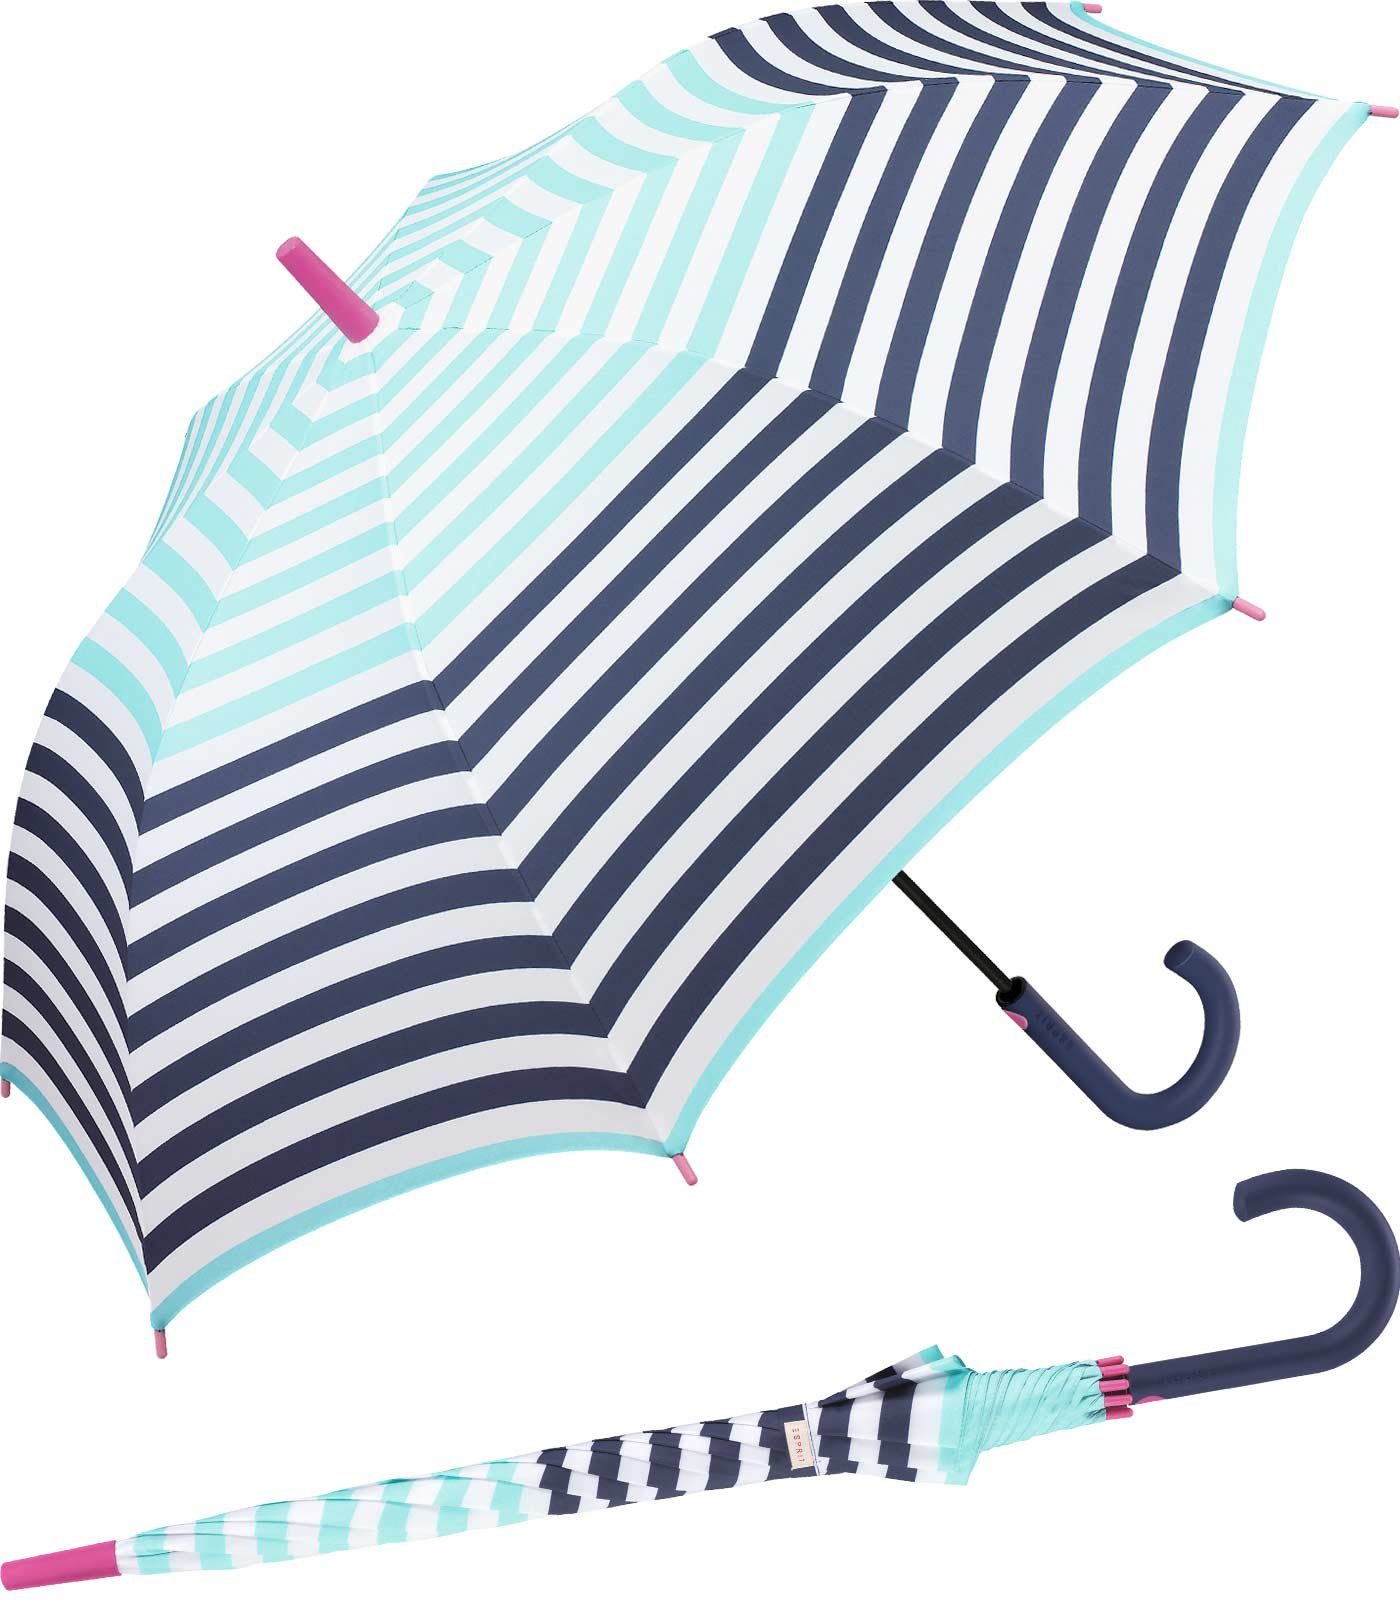 Esprit Langregenschirm großer Regenschirm für Damen mit Auf-Automatik, mit jugendlichem Streifenmuster - hellblau-navy